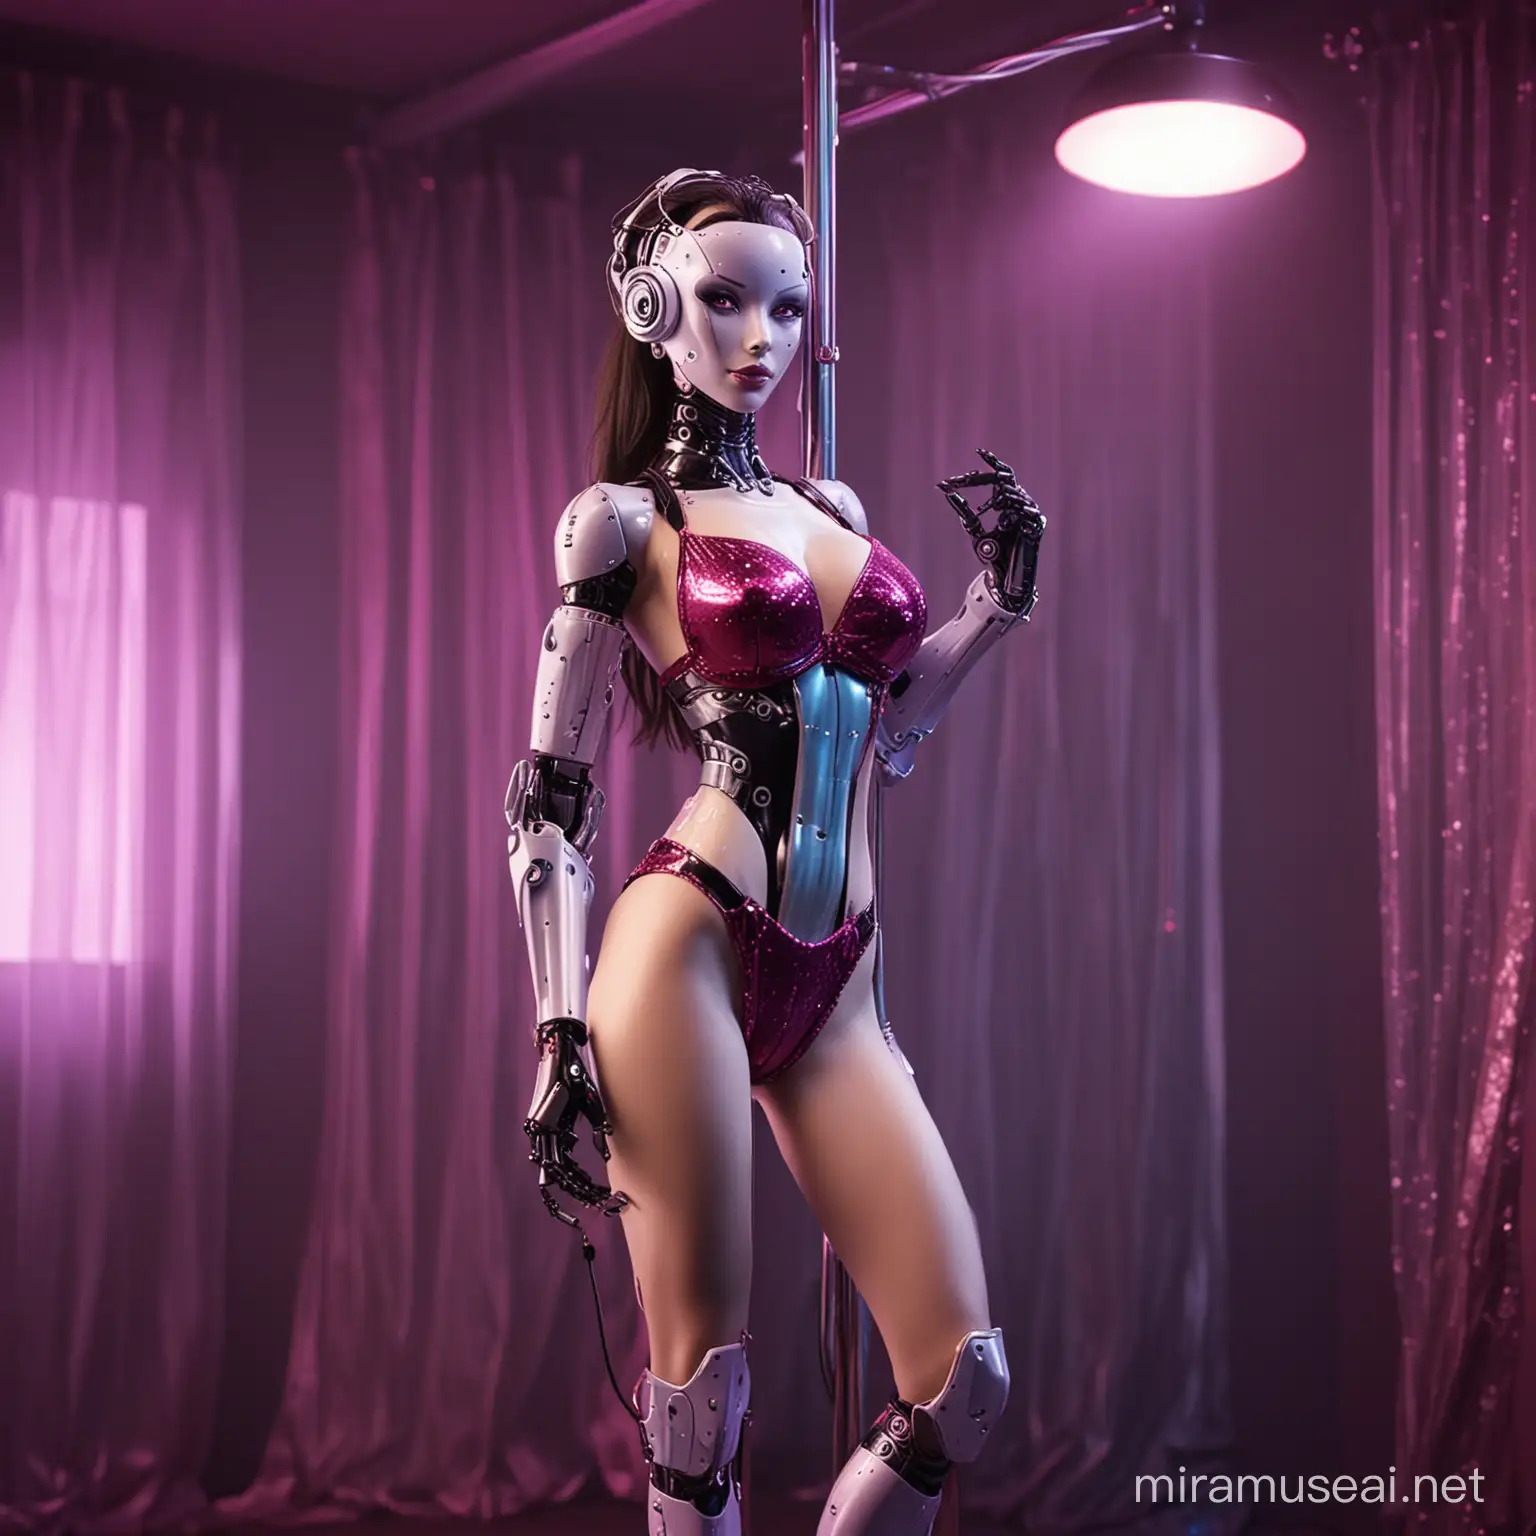 Sensuous Female Robot Pole Dancing in Futuristic Brothel